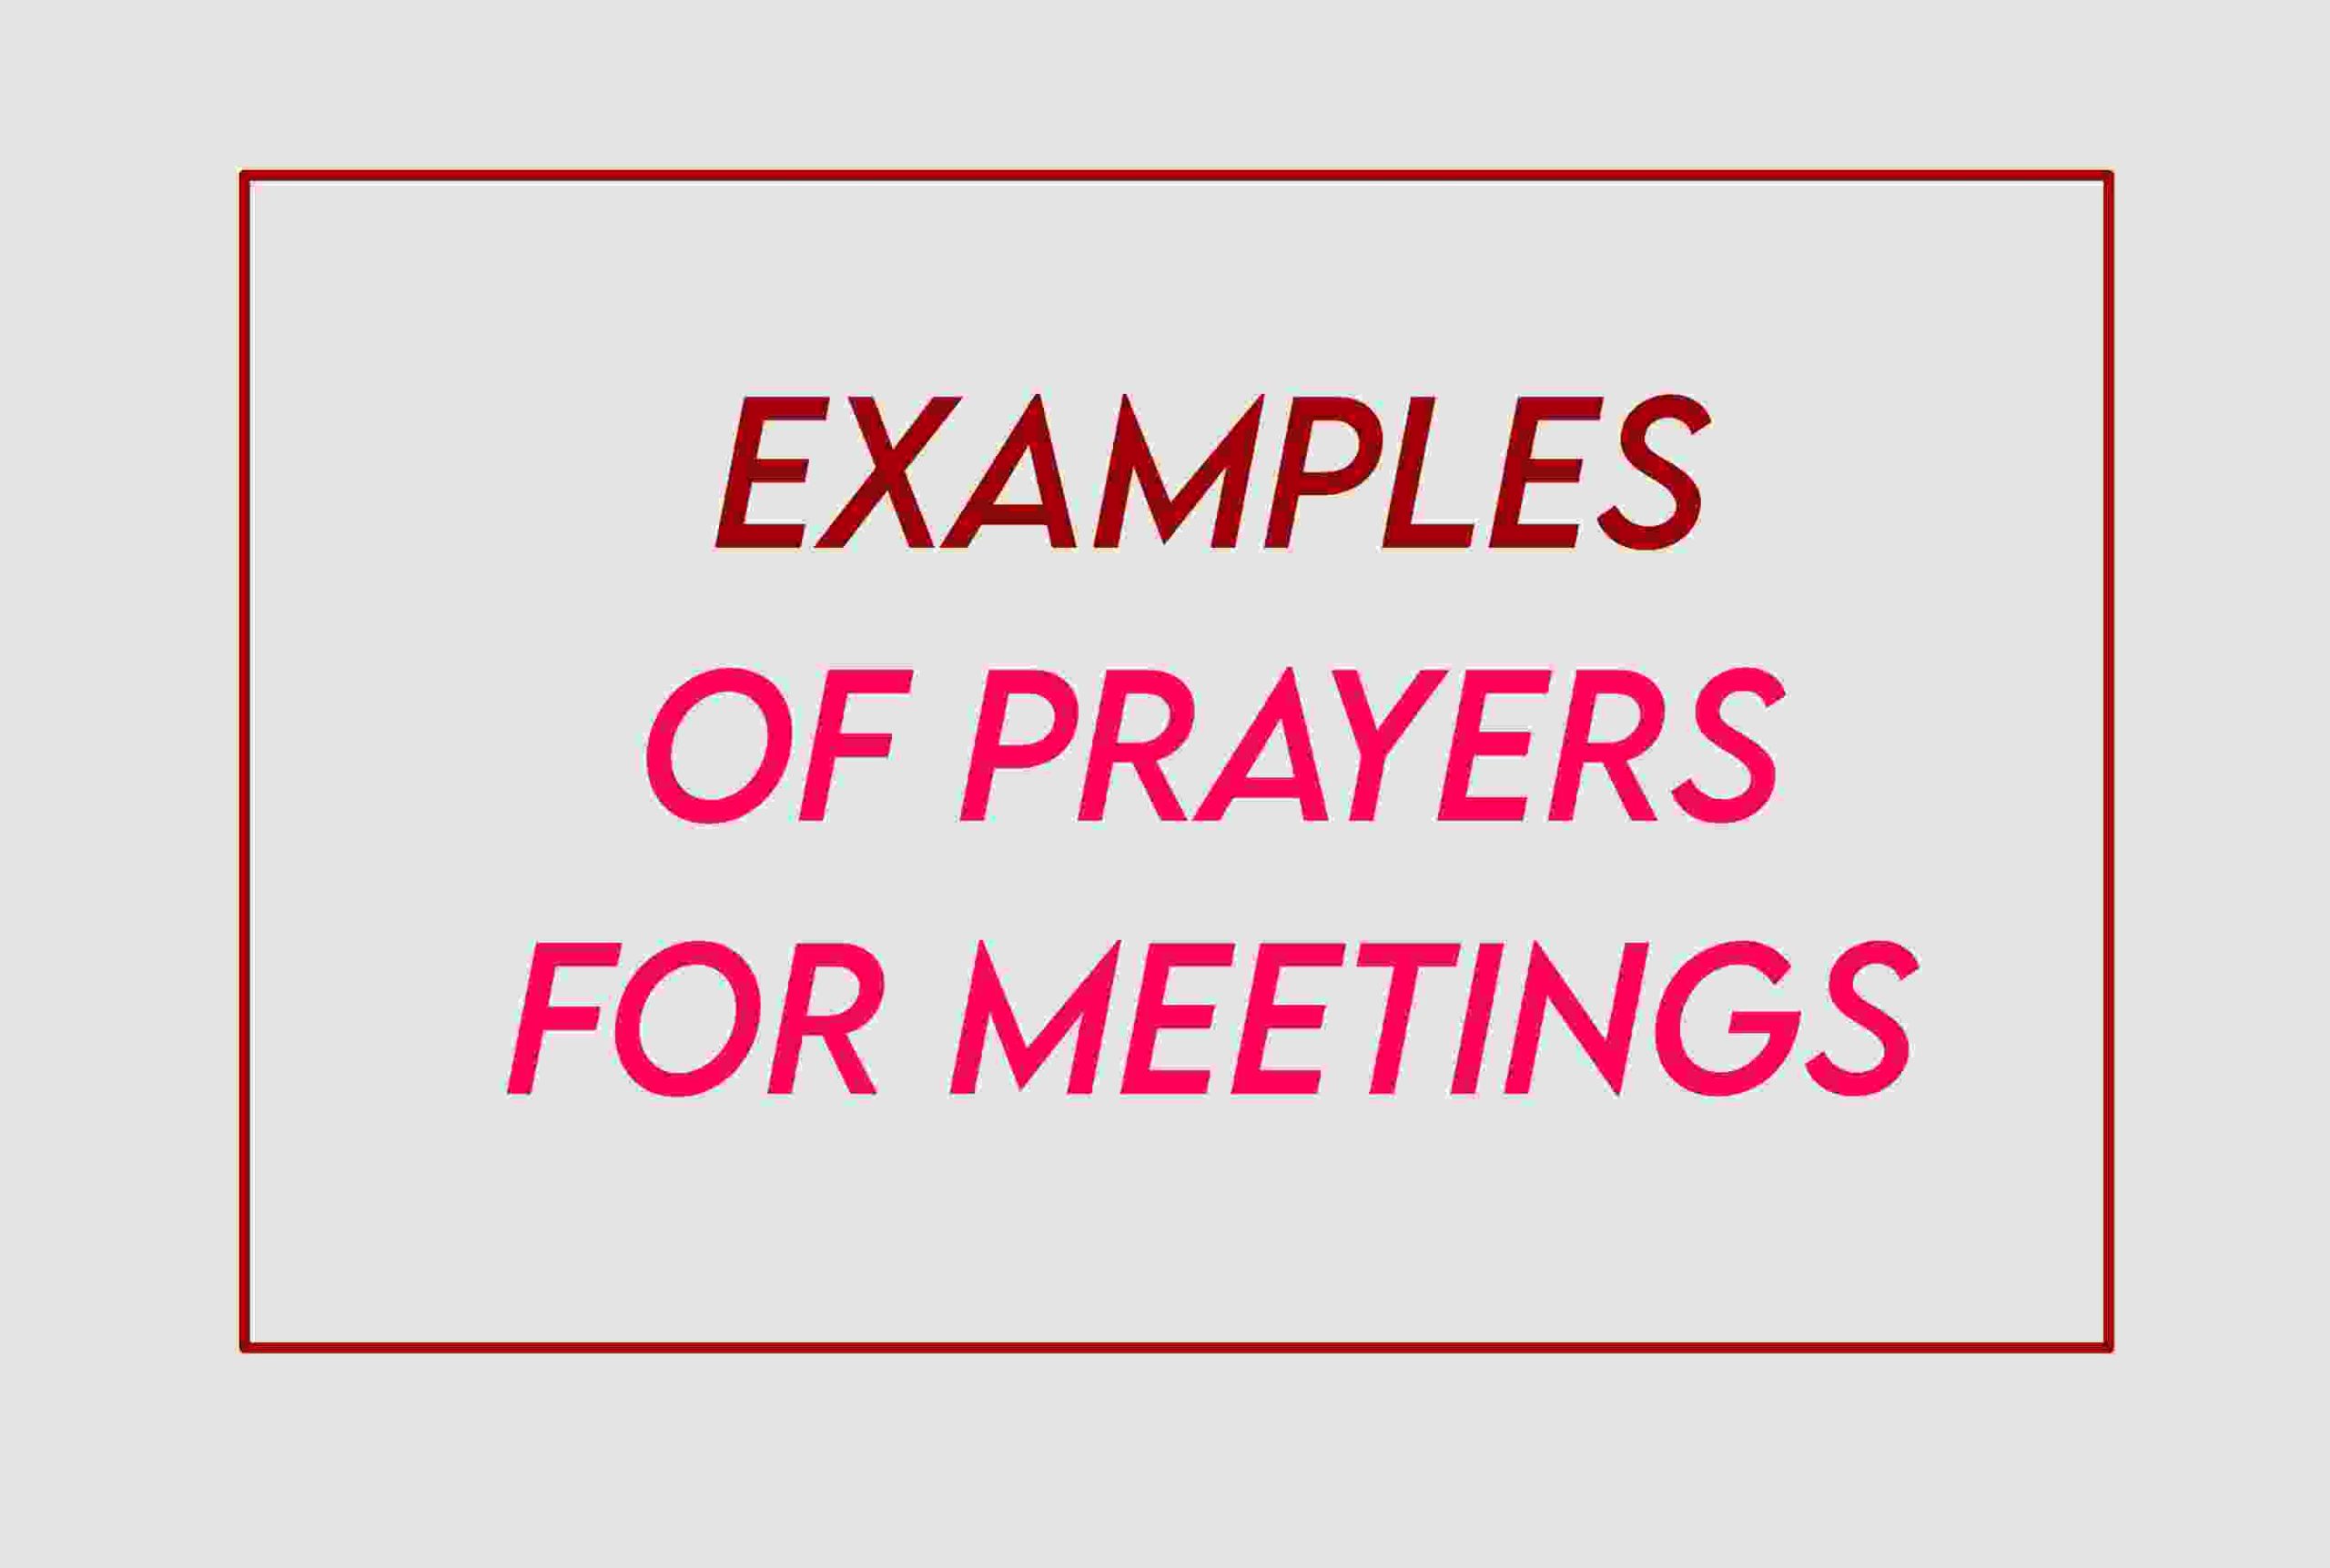 Sample Prayers For Meetings